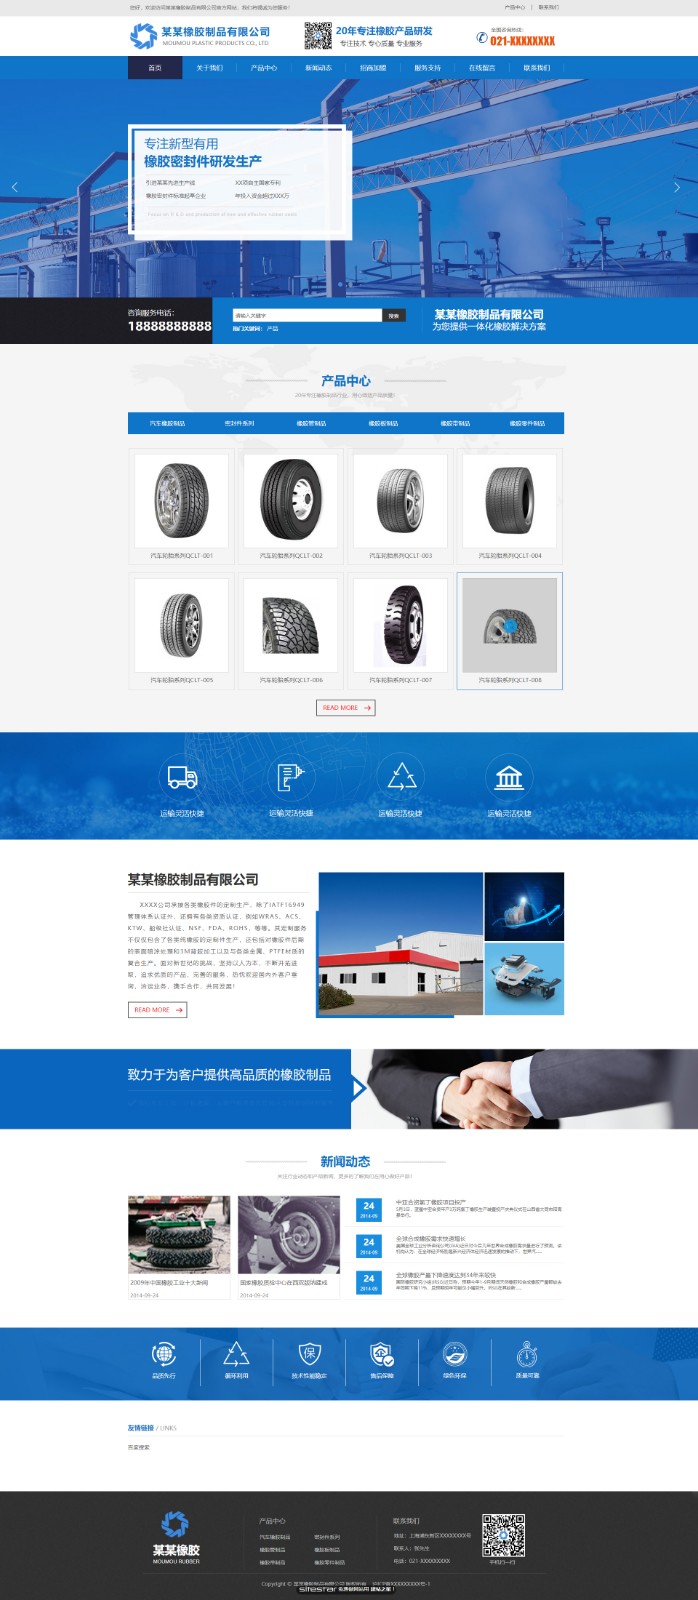 企业网站精美模板-rubber-1044991